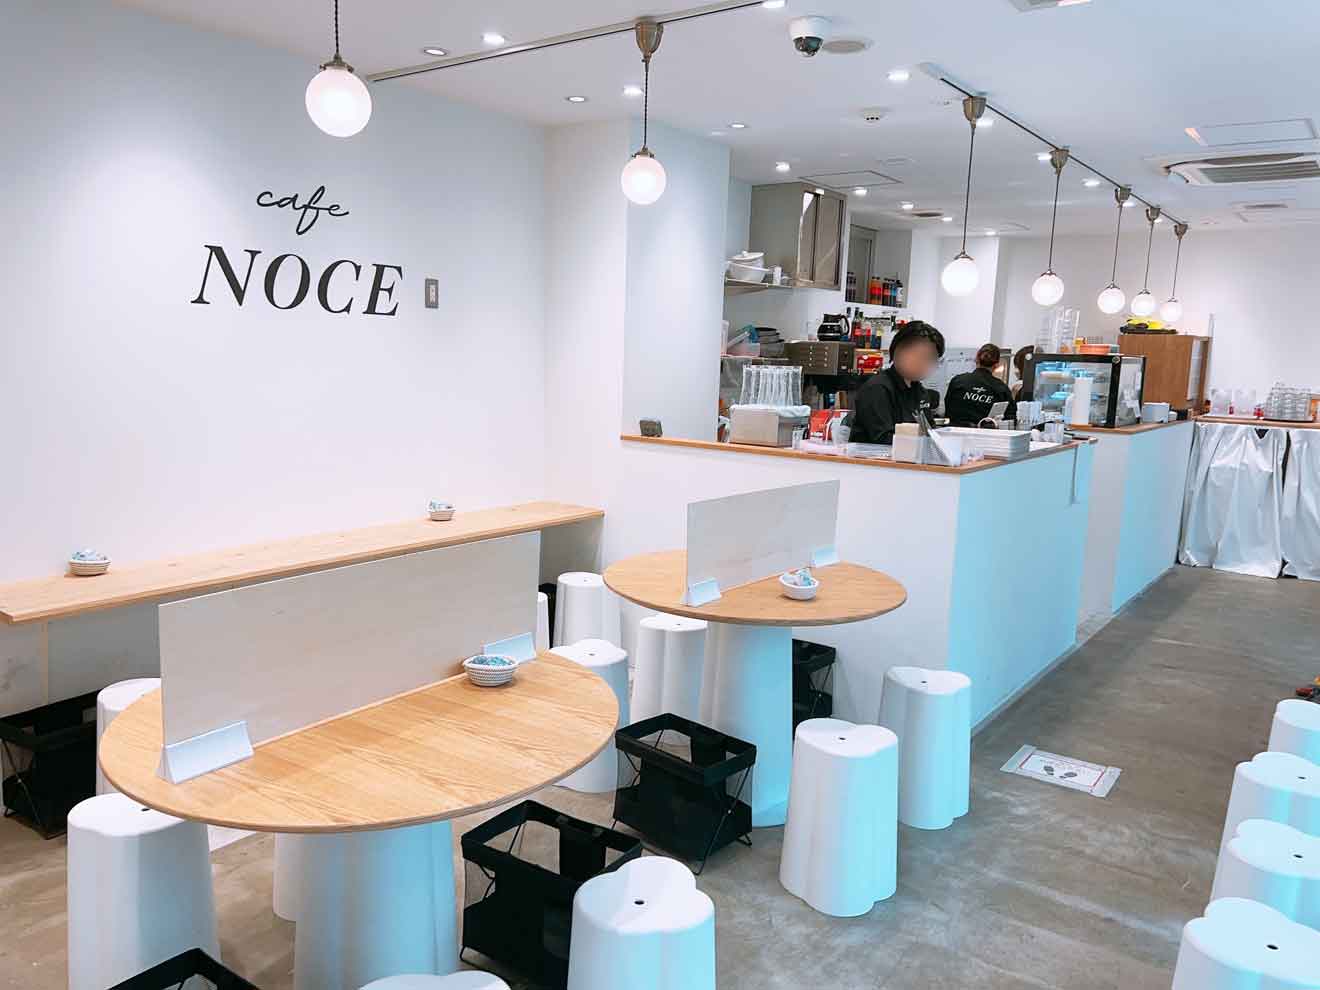 「Cafe NOCE」の店内